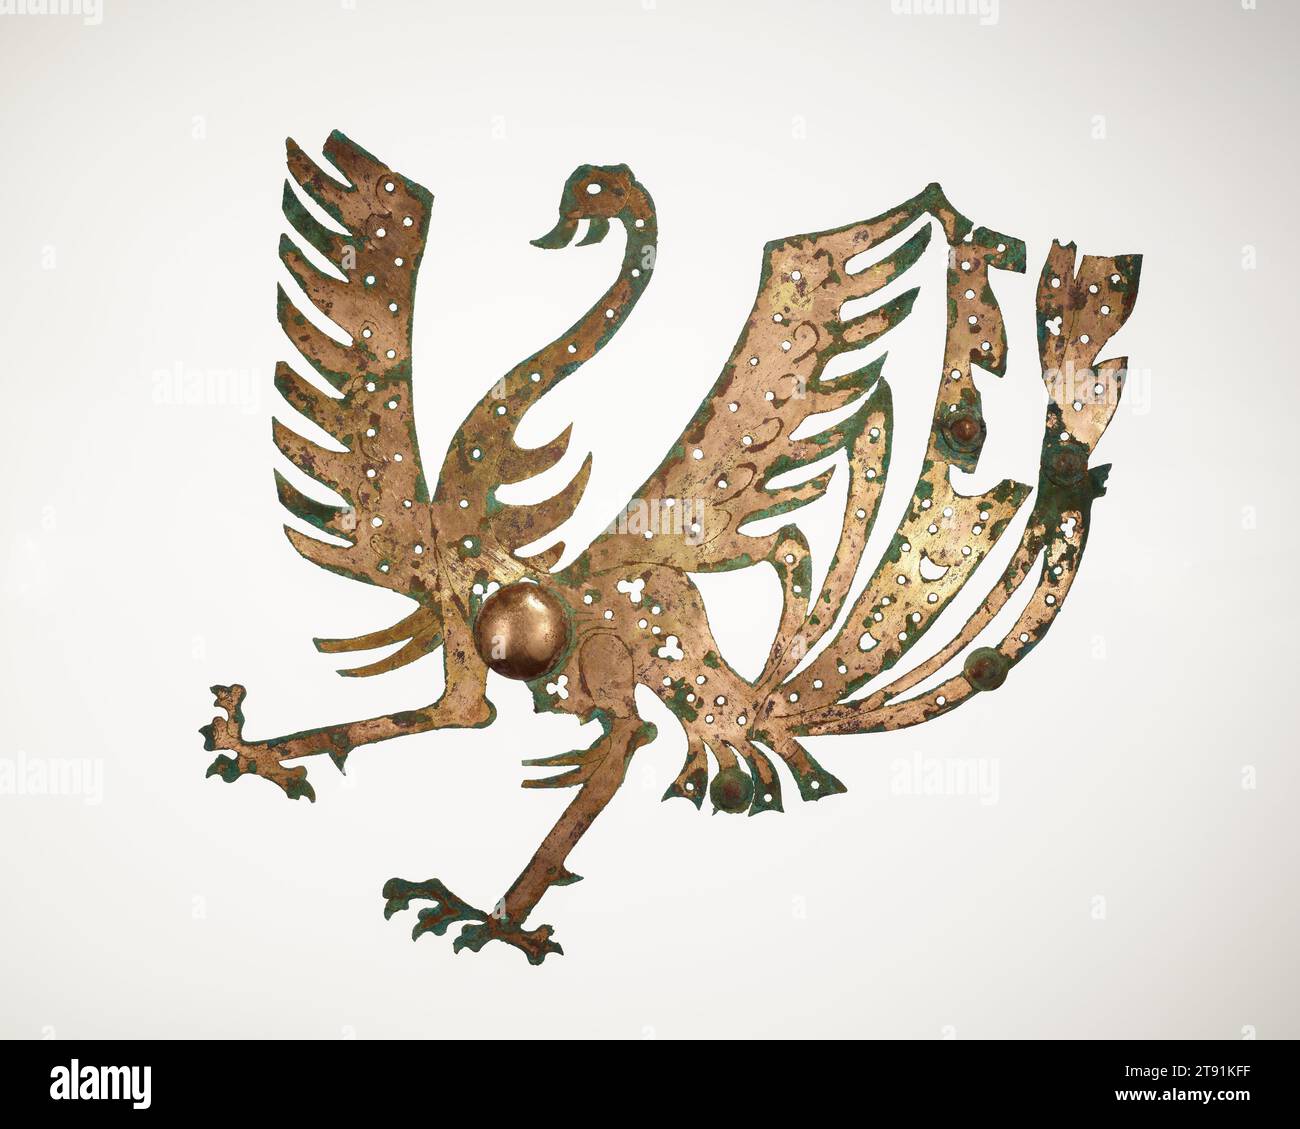 Plaque Phoenix, 2e siècle, 16 1/4 x 16 5/8 po. (41,28 x 42,23 cm), bronze doré, Chine, 2e siècle, cette plaque provient d'un groupe remarquable de vingt-six plaques dorées, très probablement de la province de Szechwan, qui comprend des silhouettes d'animaux, de divinités, de disques pi et d'arcs de huang avec des têtes de dragon jumelles. Découpées dans des feuilles de bronze et dorées, plusieurs plaques arborent des reflets argentés et des détails gravés. Alors que les archéologues chinois ont vérifié que de telles plaques servaient de décoration de tombeaux dans des sépultures coûteuses pendant la dynastie des Han orientaux (25-220) Banque D'Images